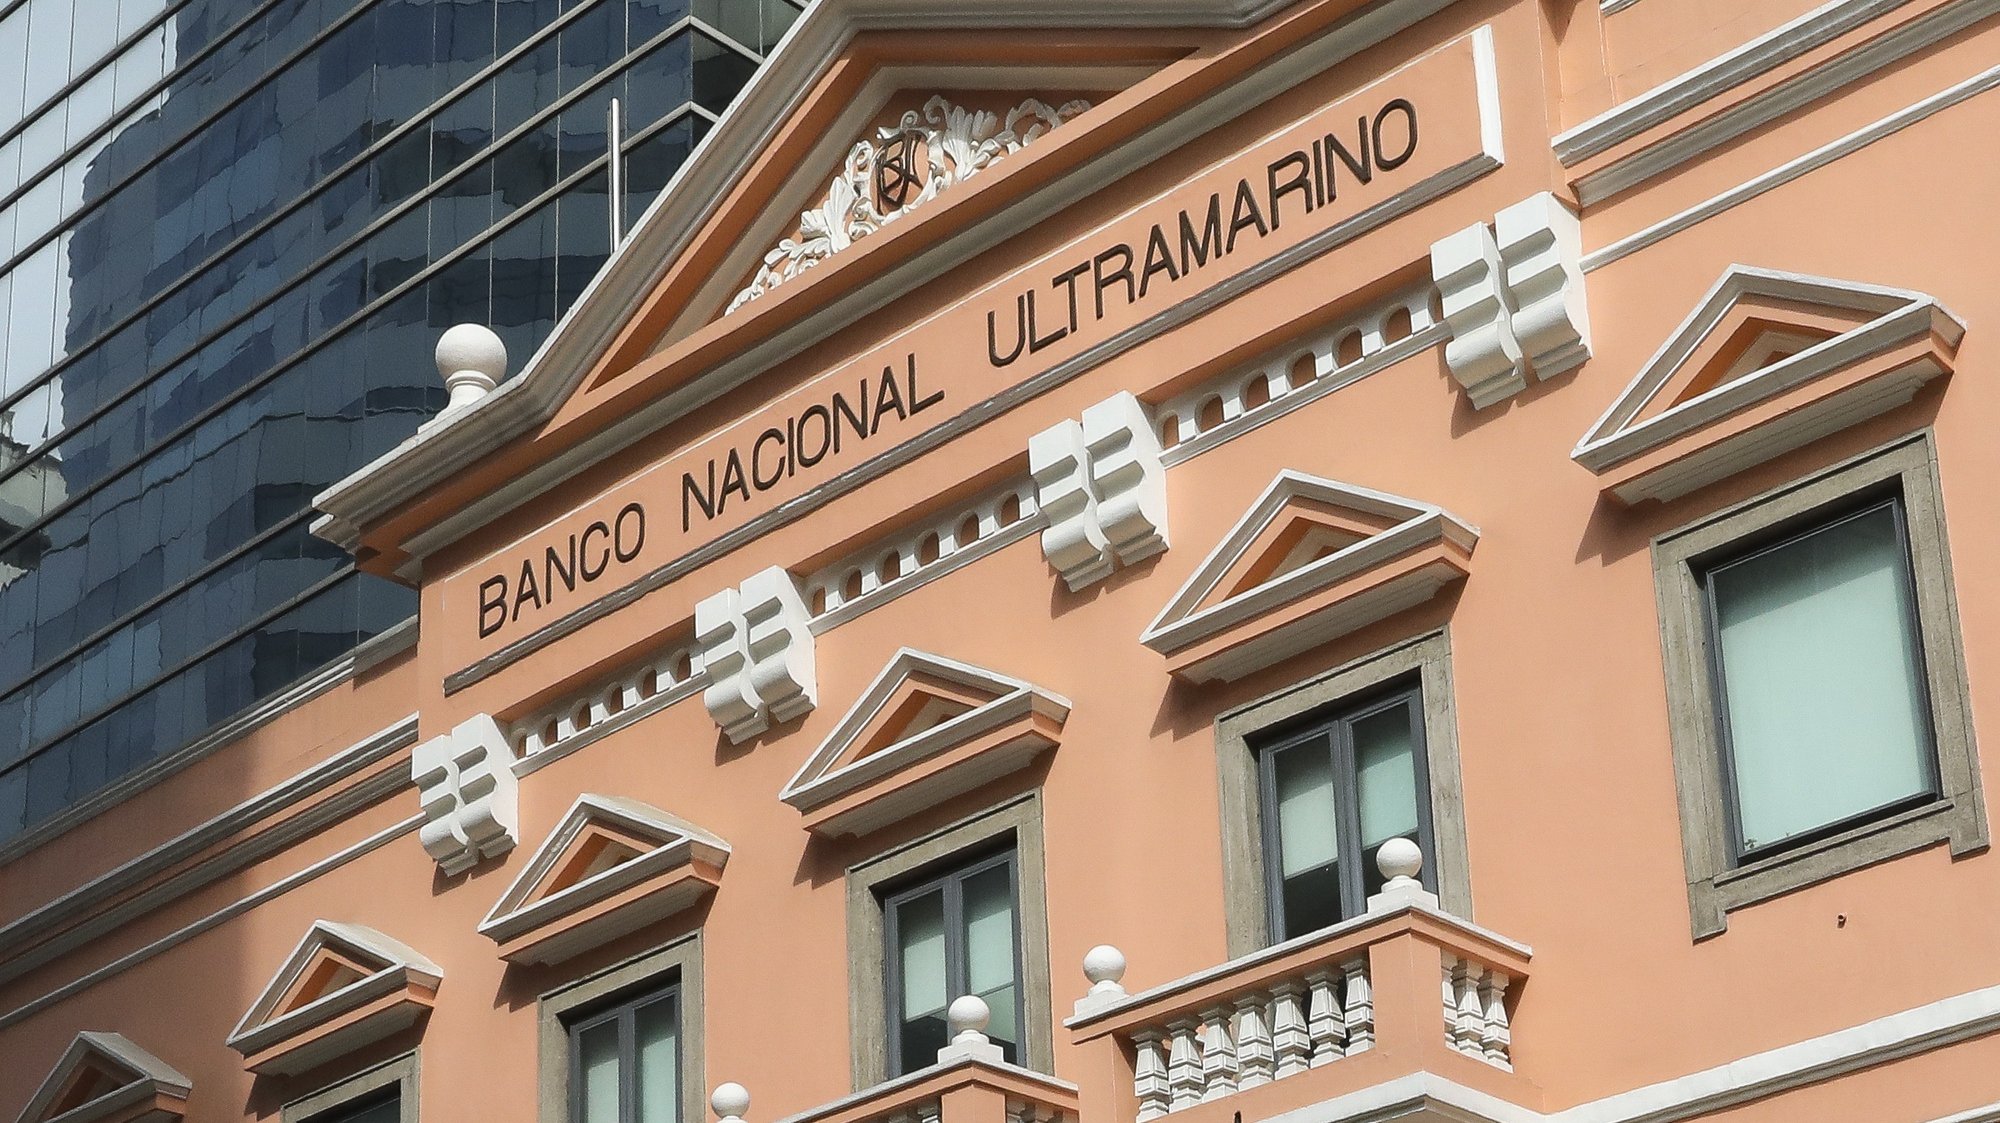 Fachada do edifício do Banco Nacional Ultramarino em Macau, China.17 de dezembro de 2019. JOÃO RELVAS/LUSA